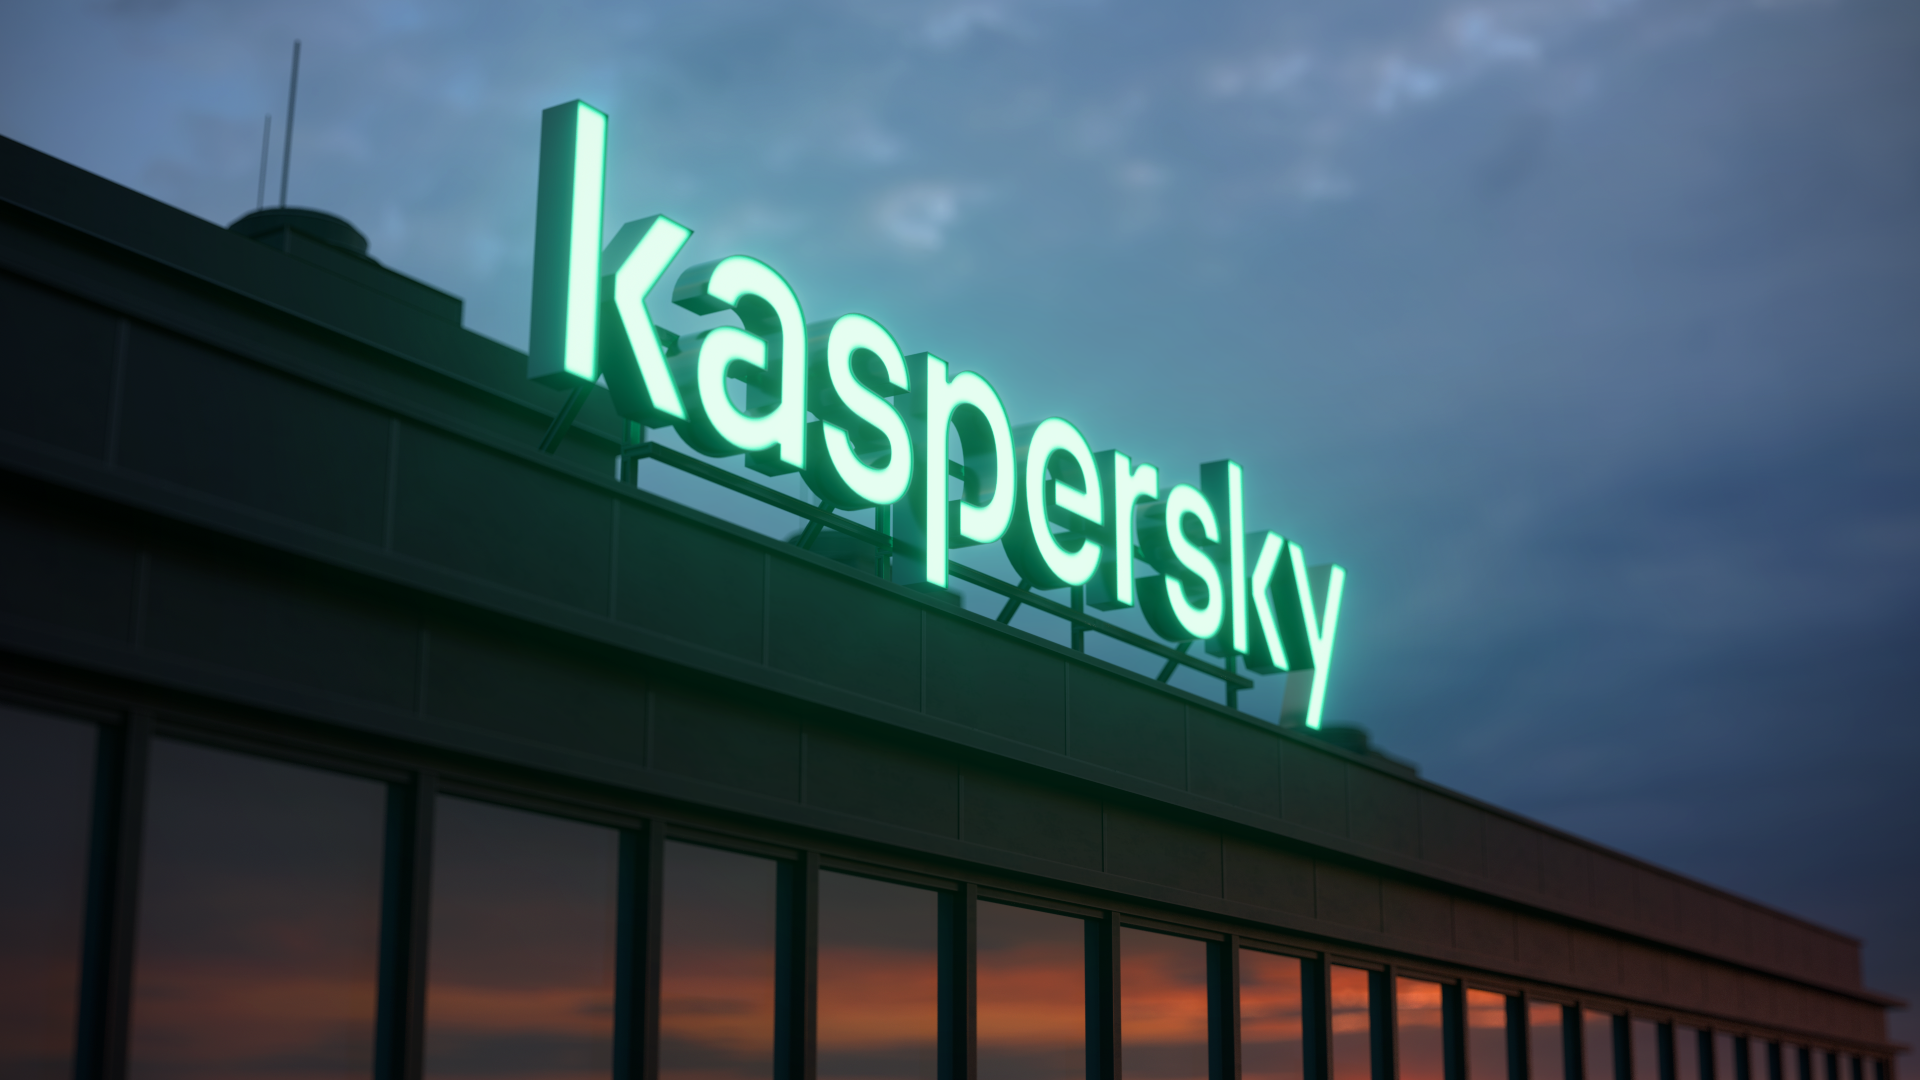 Kaspersky: Əməkdaşlar öz kiber təhlükəsizlik barədə biliklərini həddindən artıq yüksək qiymətləndirir